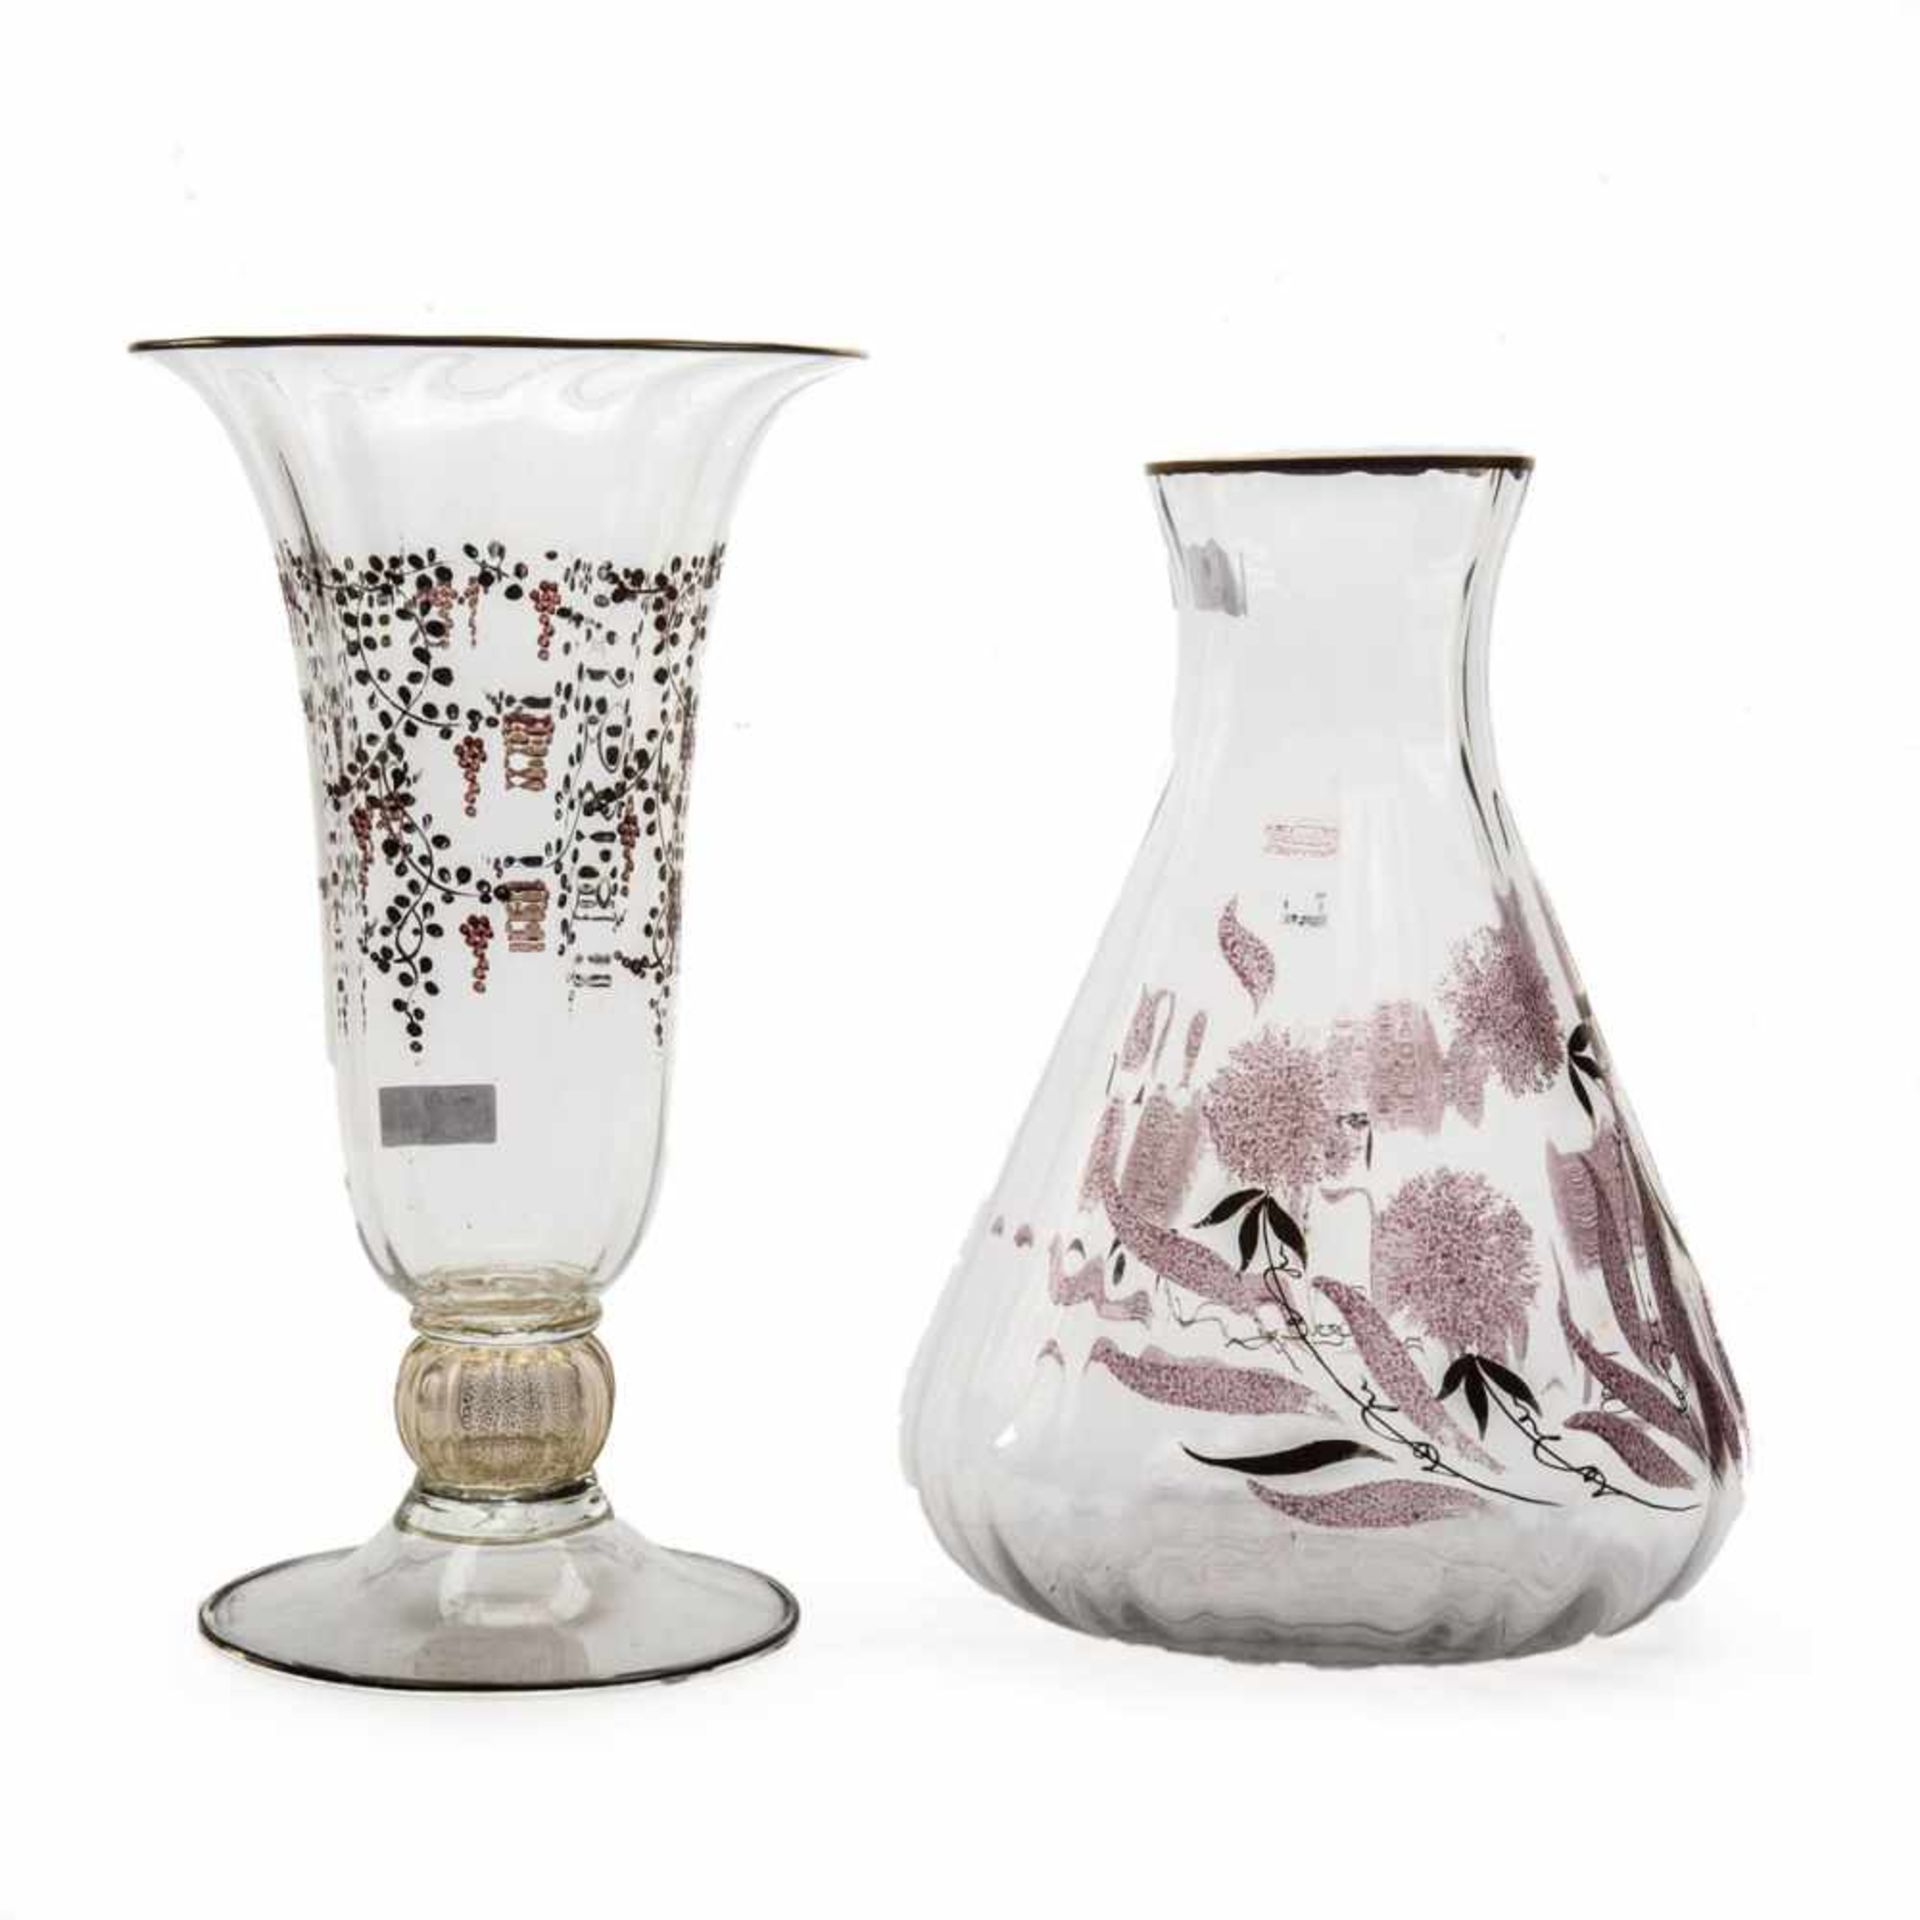 Konvolut von 2 großen Vasen, Salvadori Murano Farbloses Glas, optisch geblasen, Emailmalerei und